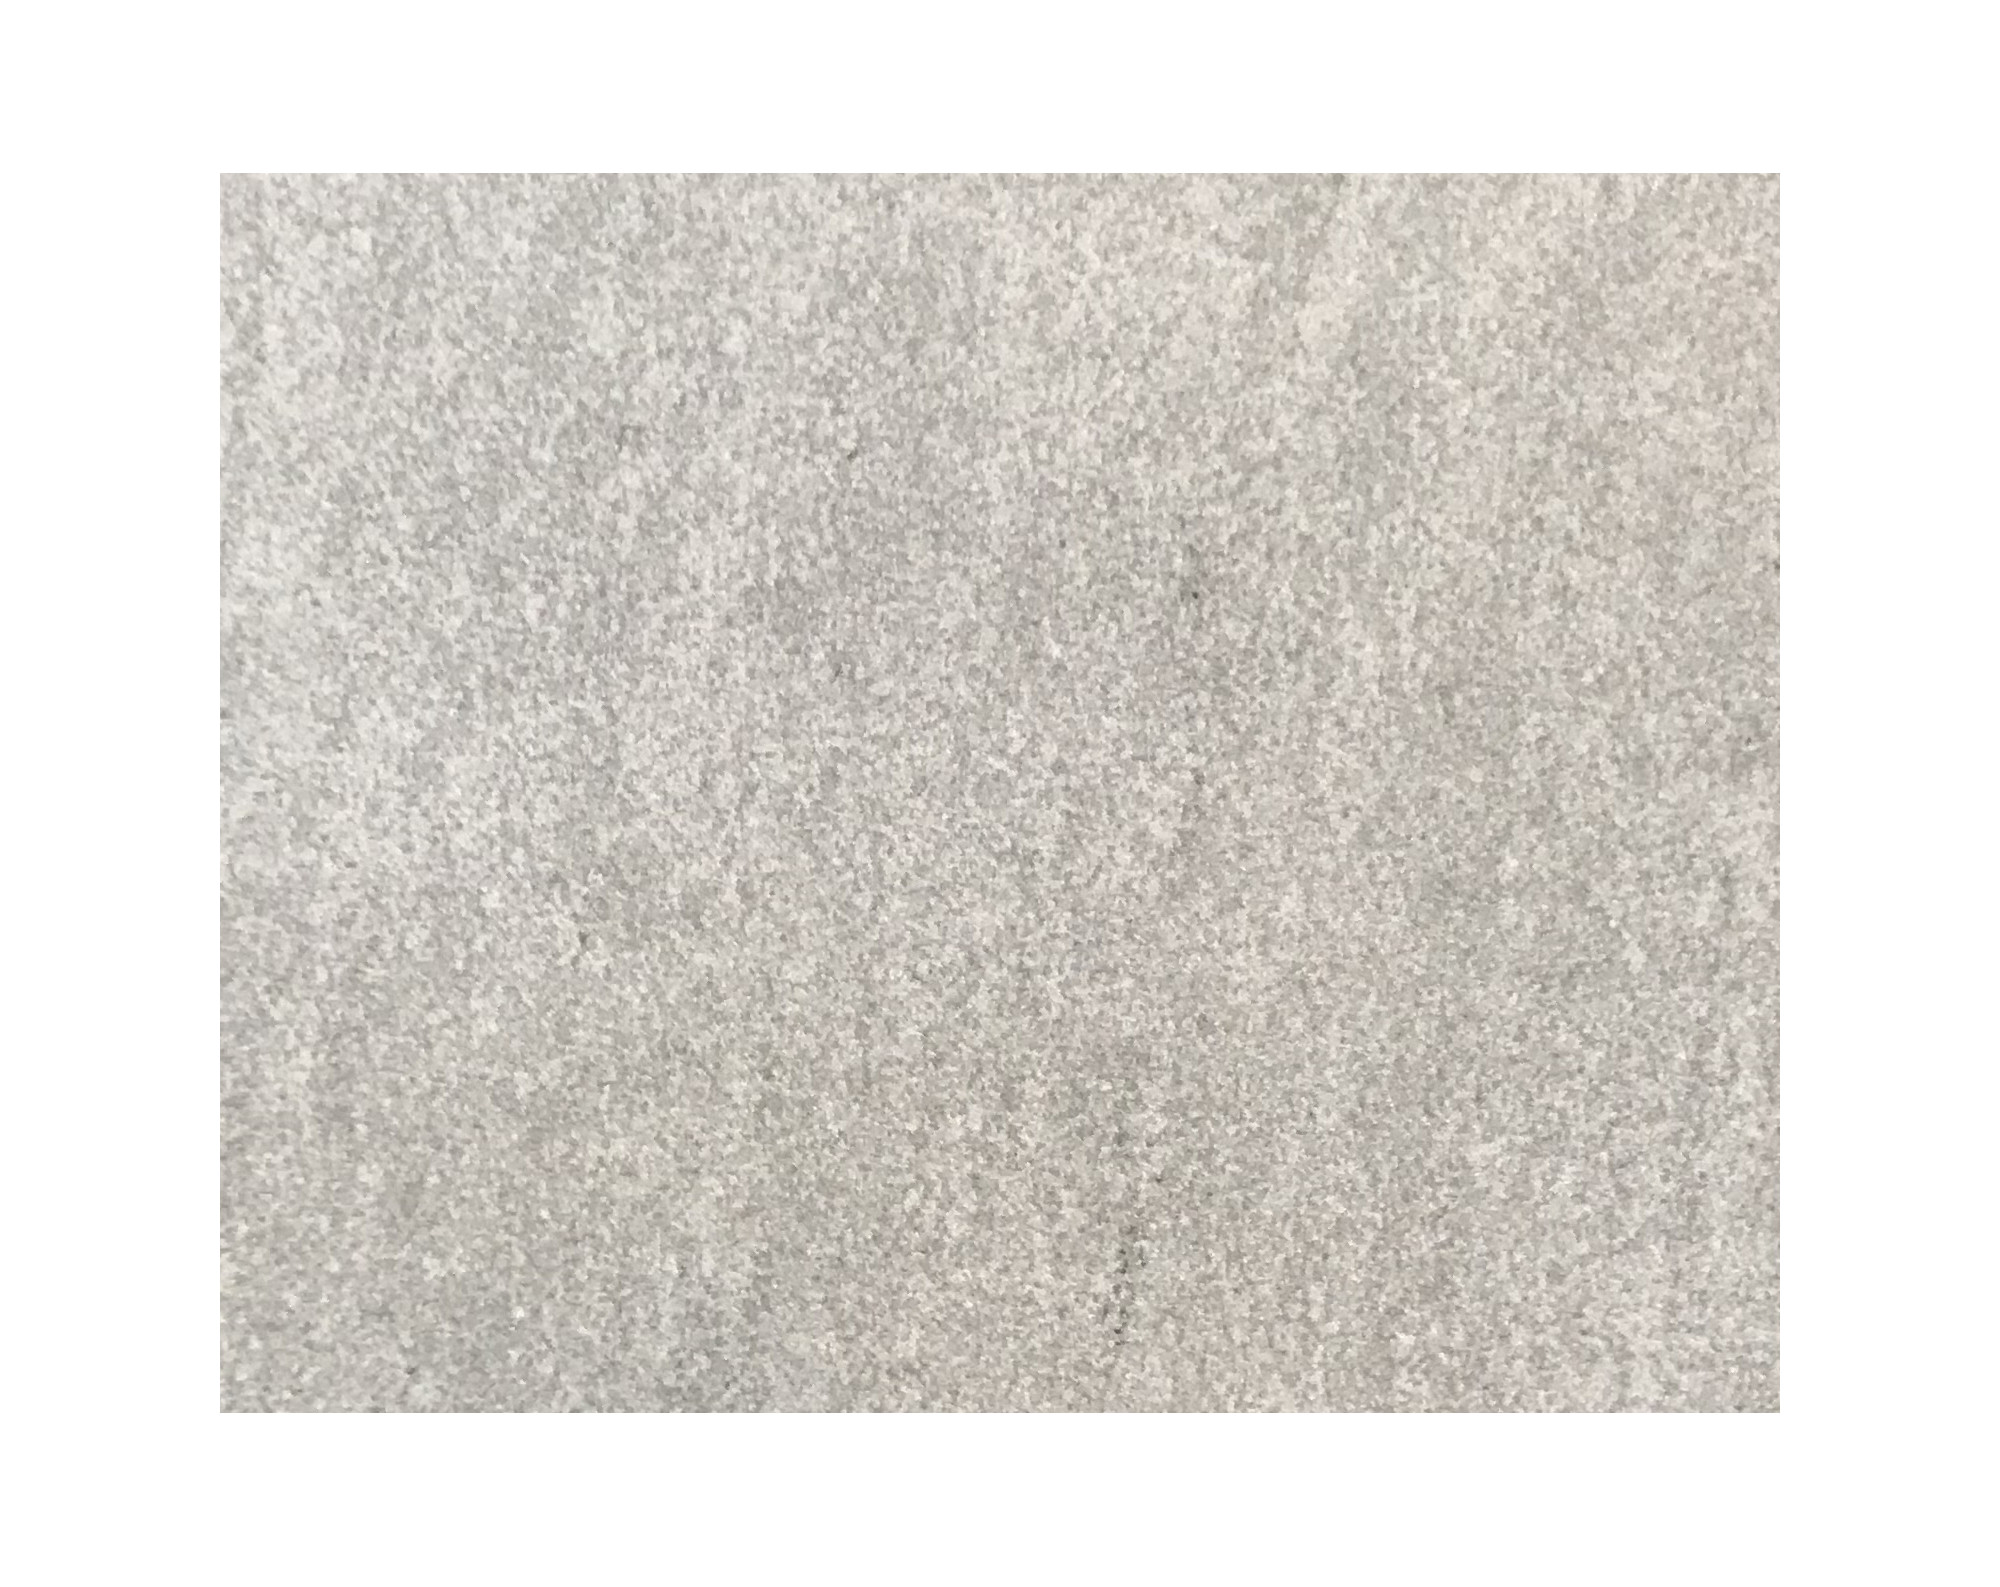 Harmo roc maranelloset, keramiek-serie, ovaal d: 5,00mx10,30, zand grijs , keramisch porselein